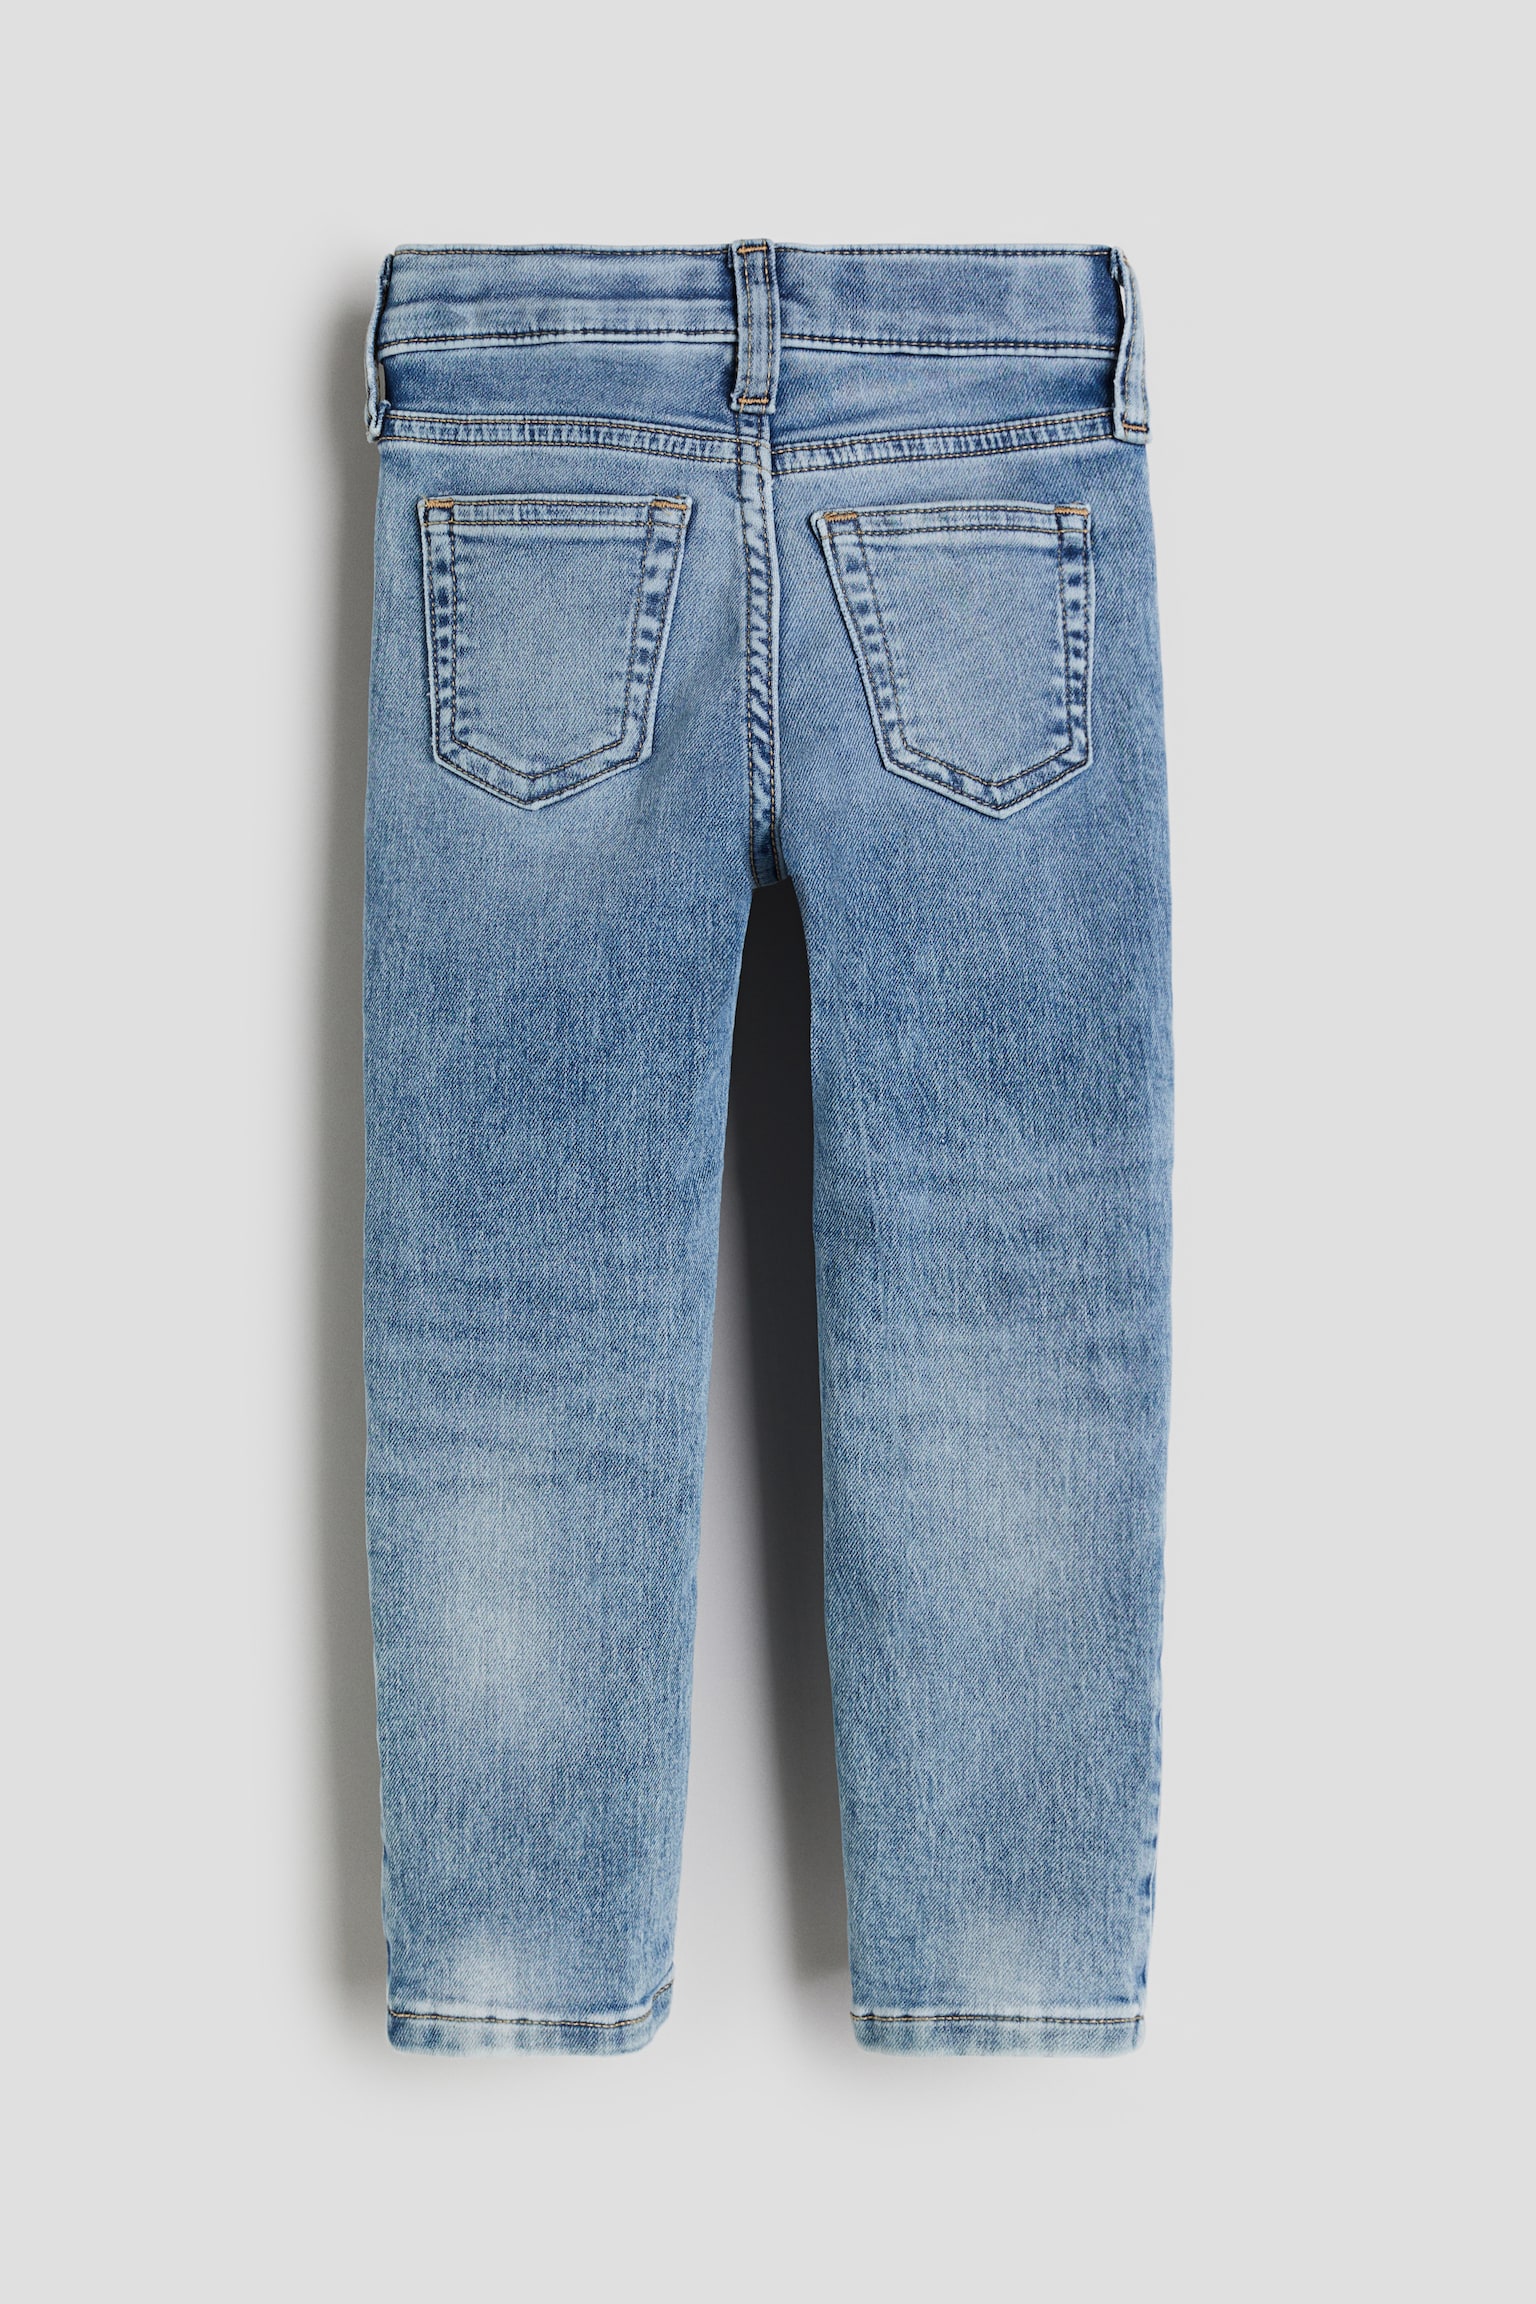 Super Soft Slim Fit Jeans - Denimblau/Denimblau/Helles Denimblau/Dunkles Denimblau - 3